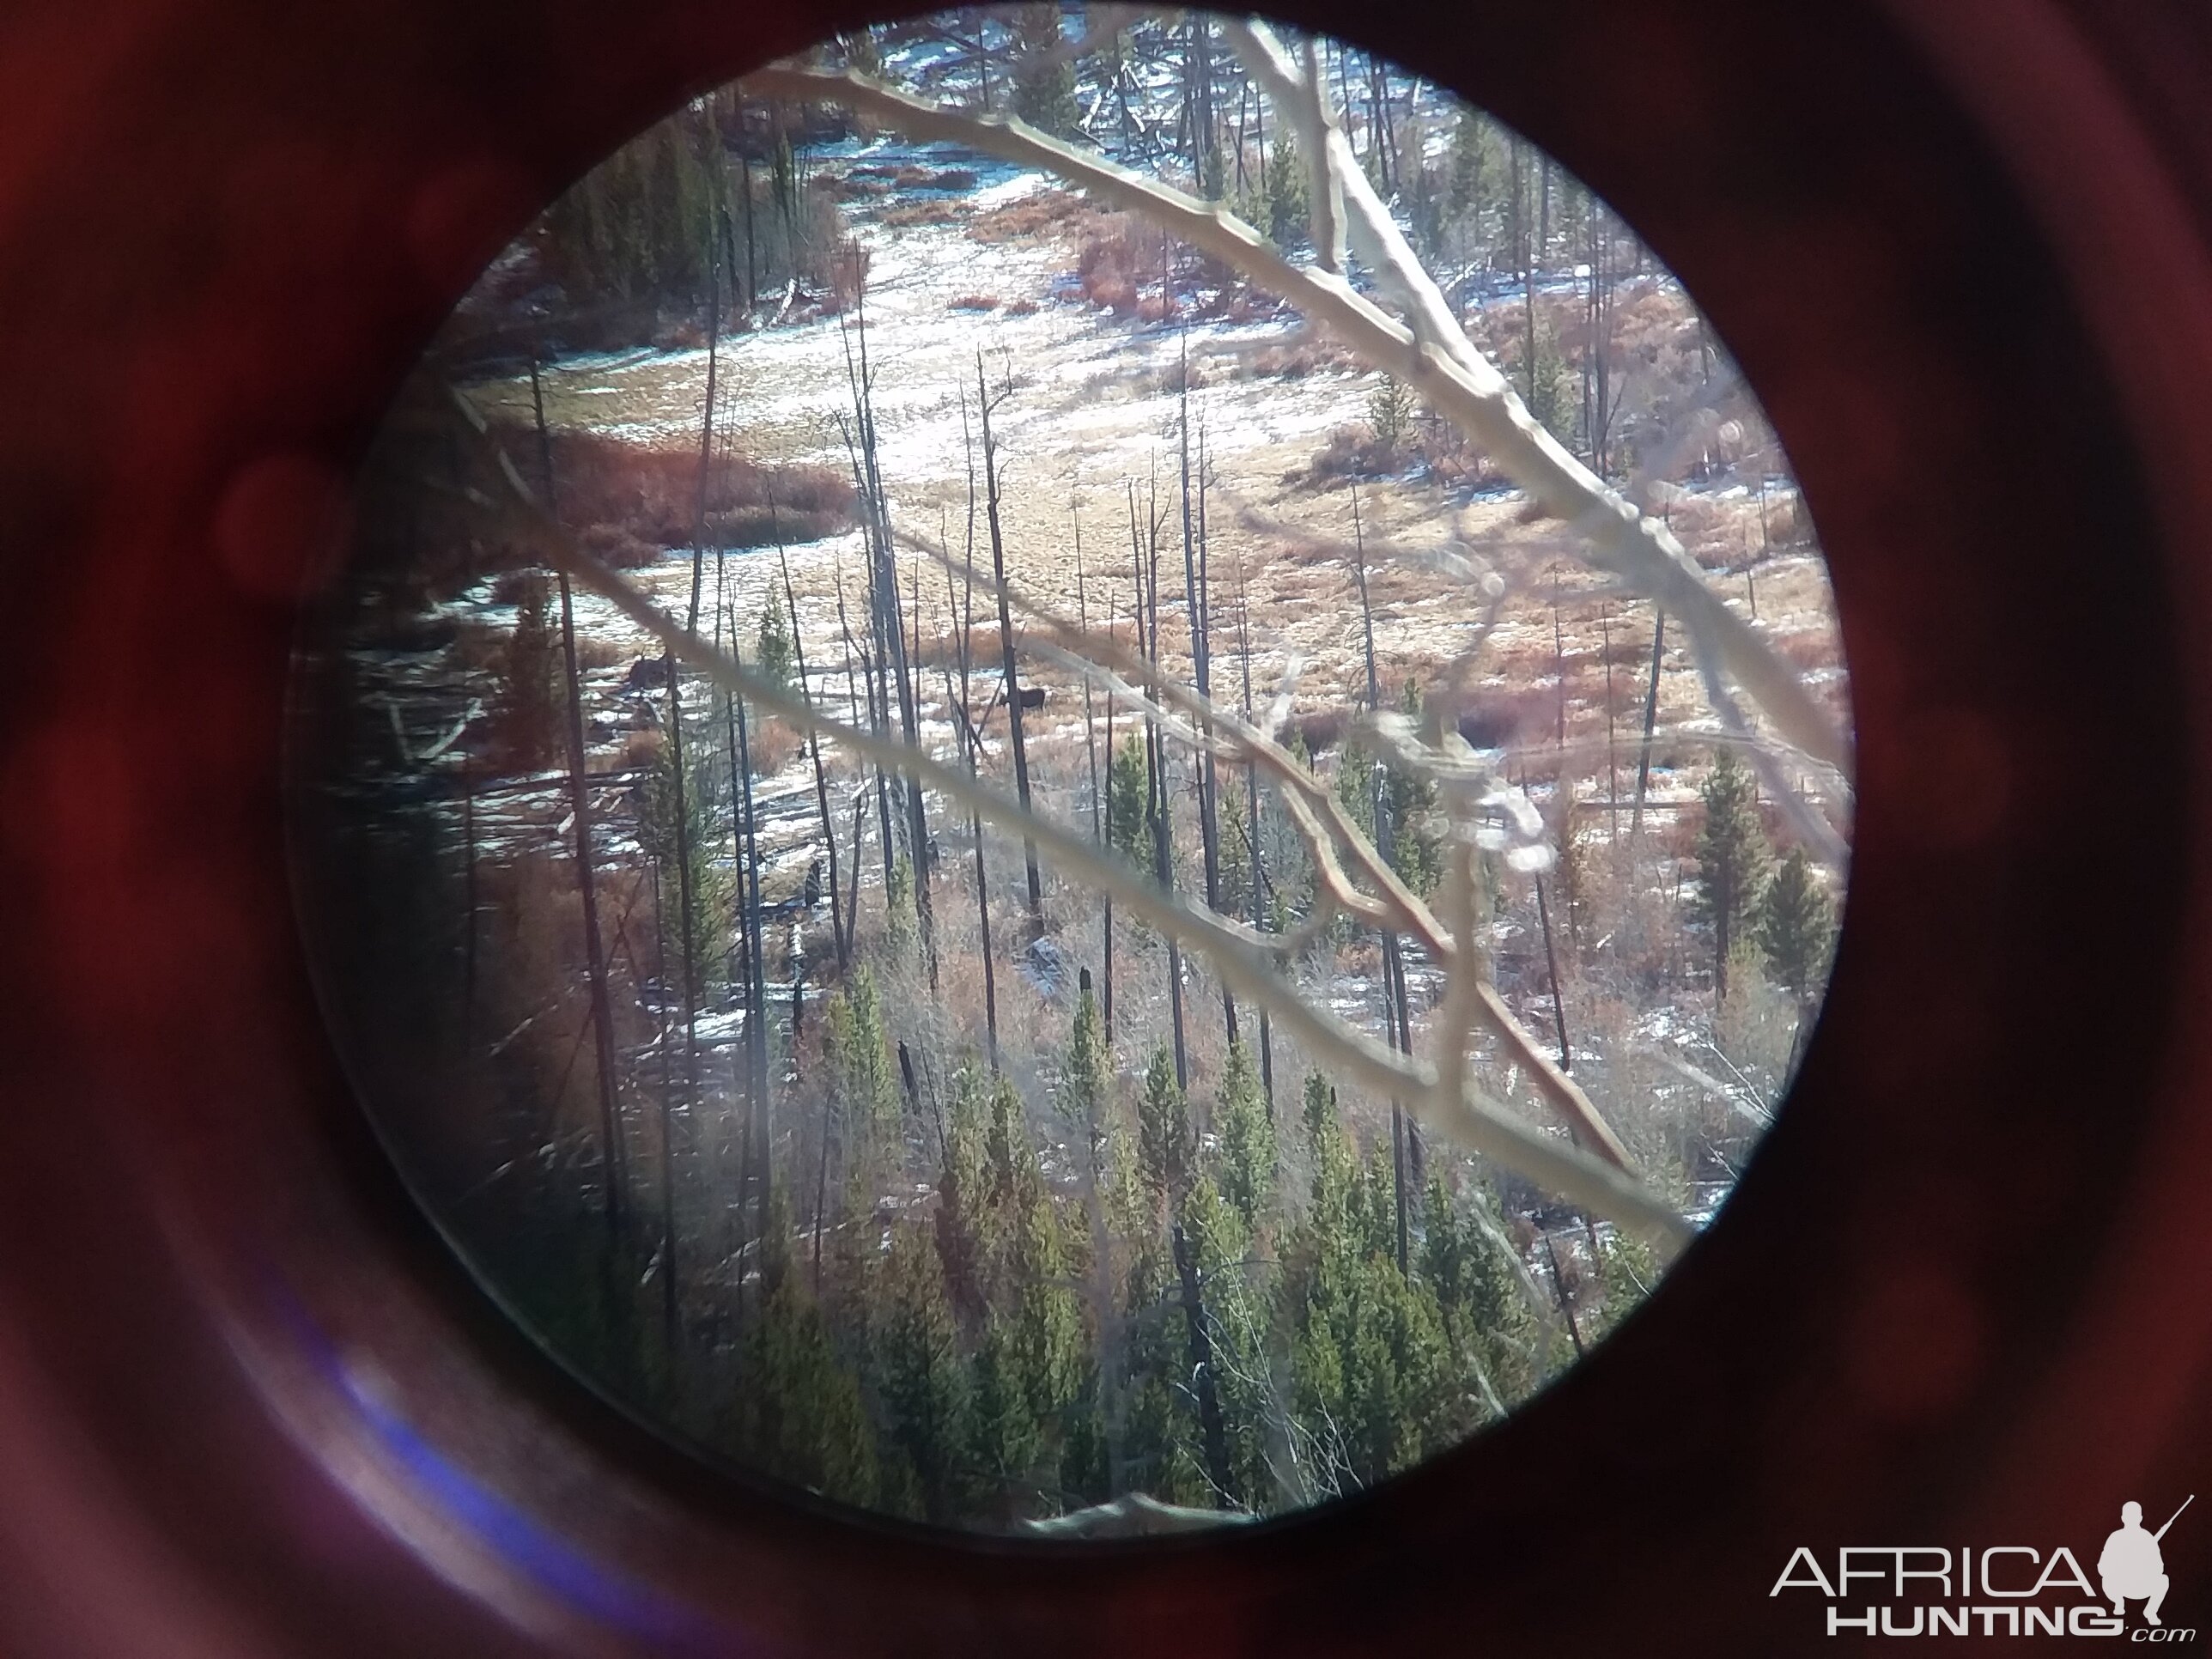 Moose through the scope